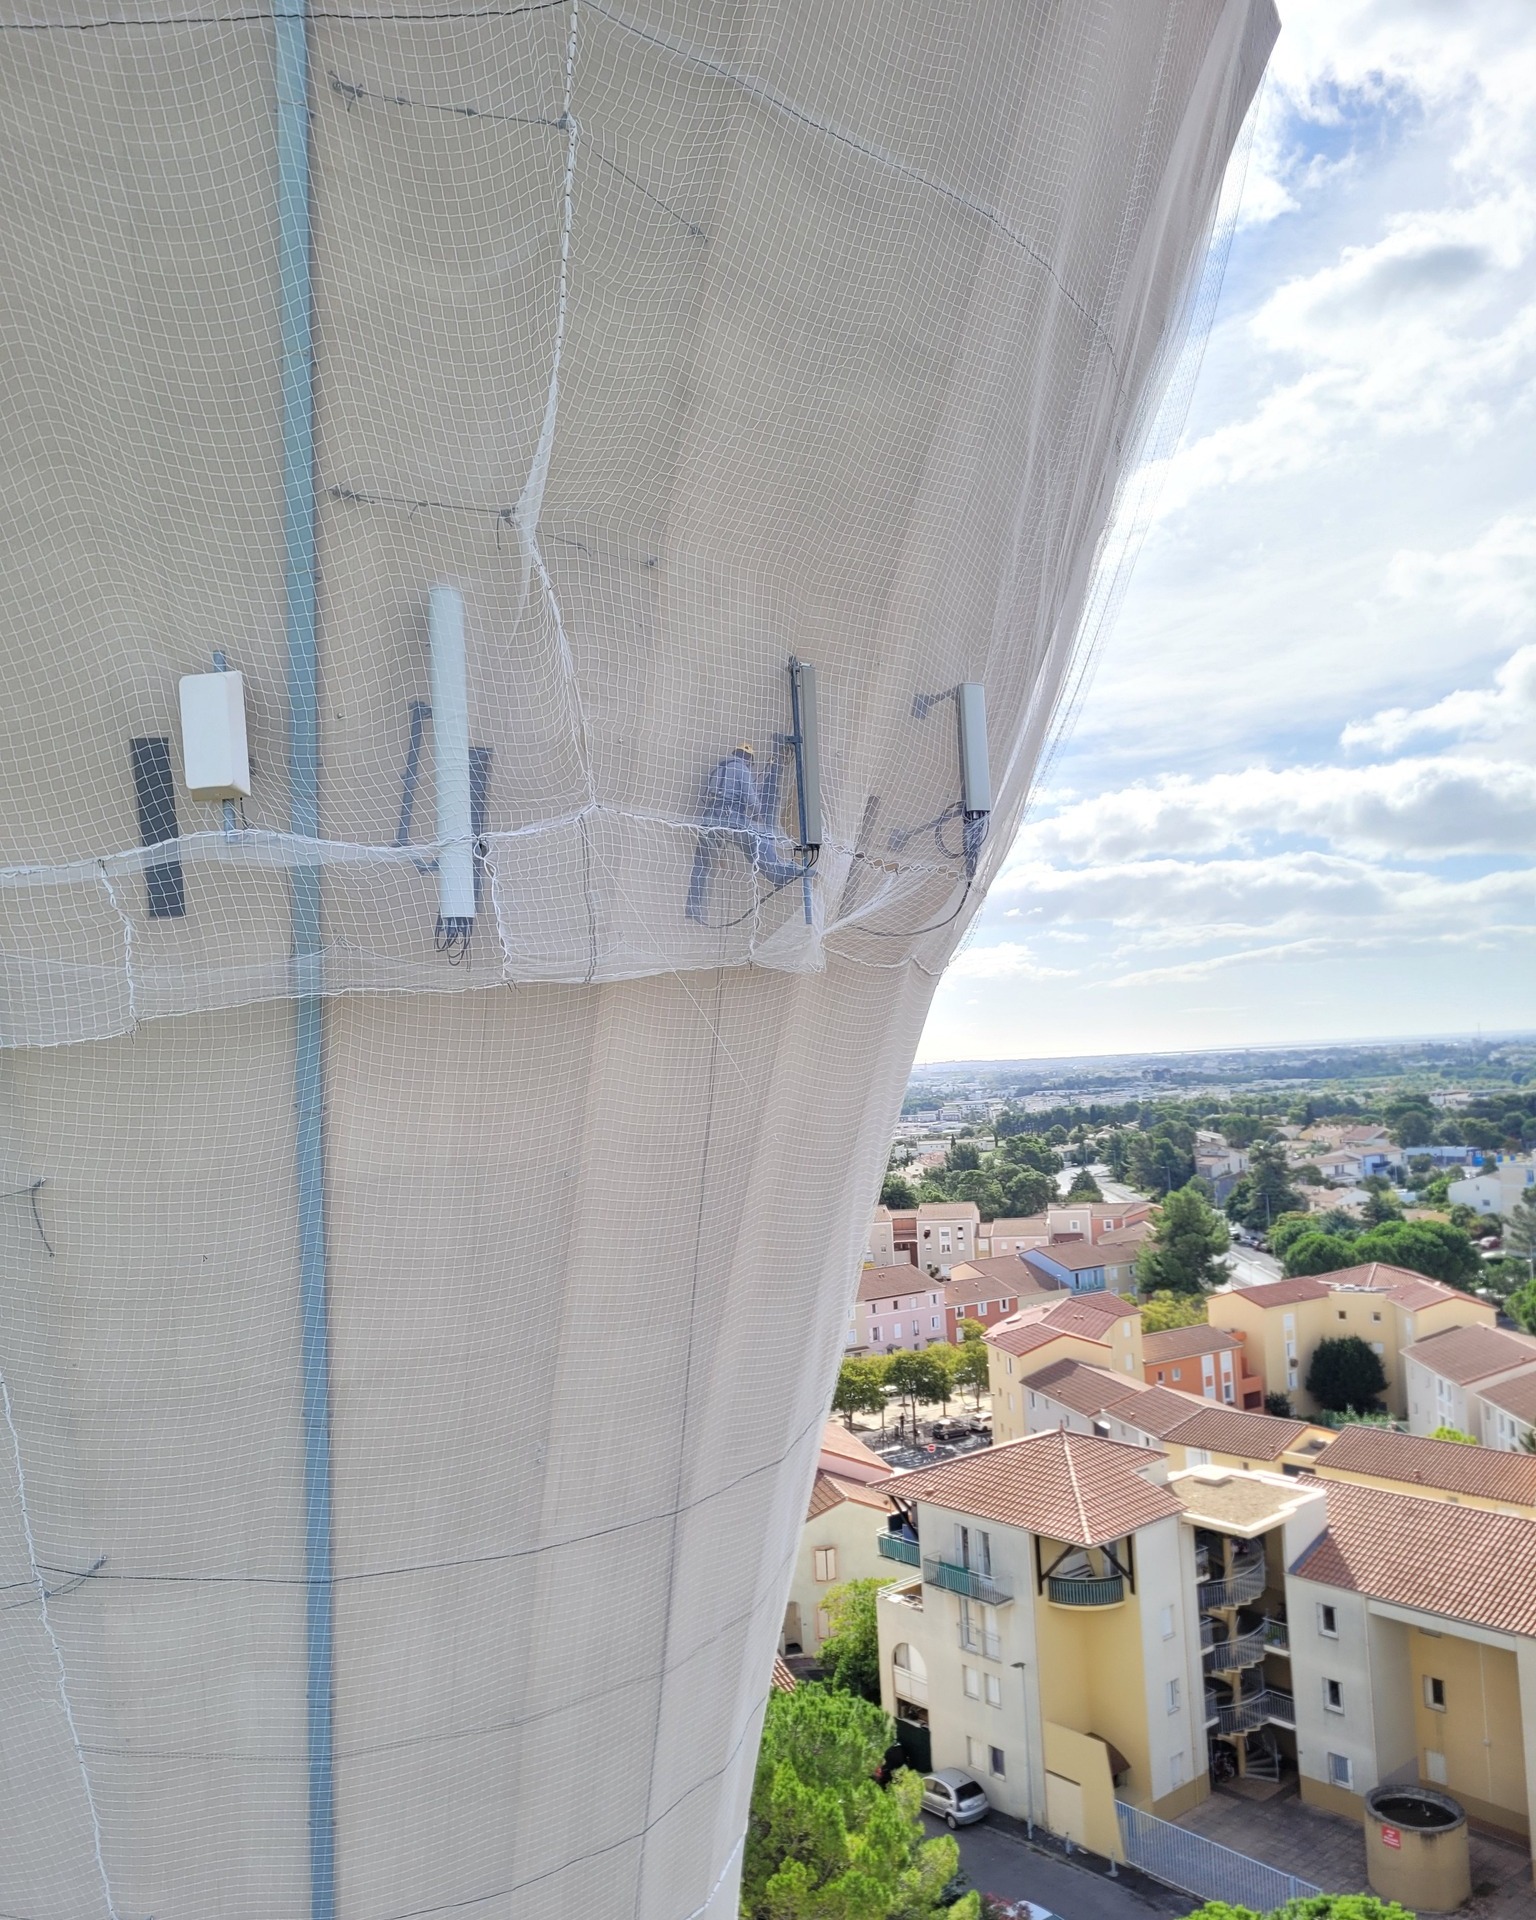 Installation en hauteur d'un filet de protection sur le château d'eau de la Mosson à Montpellier pour prévenir de la chute de pierres.